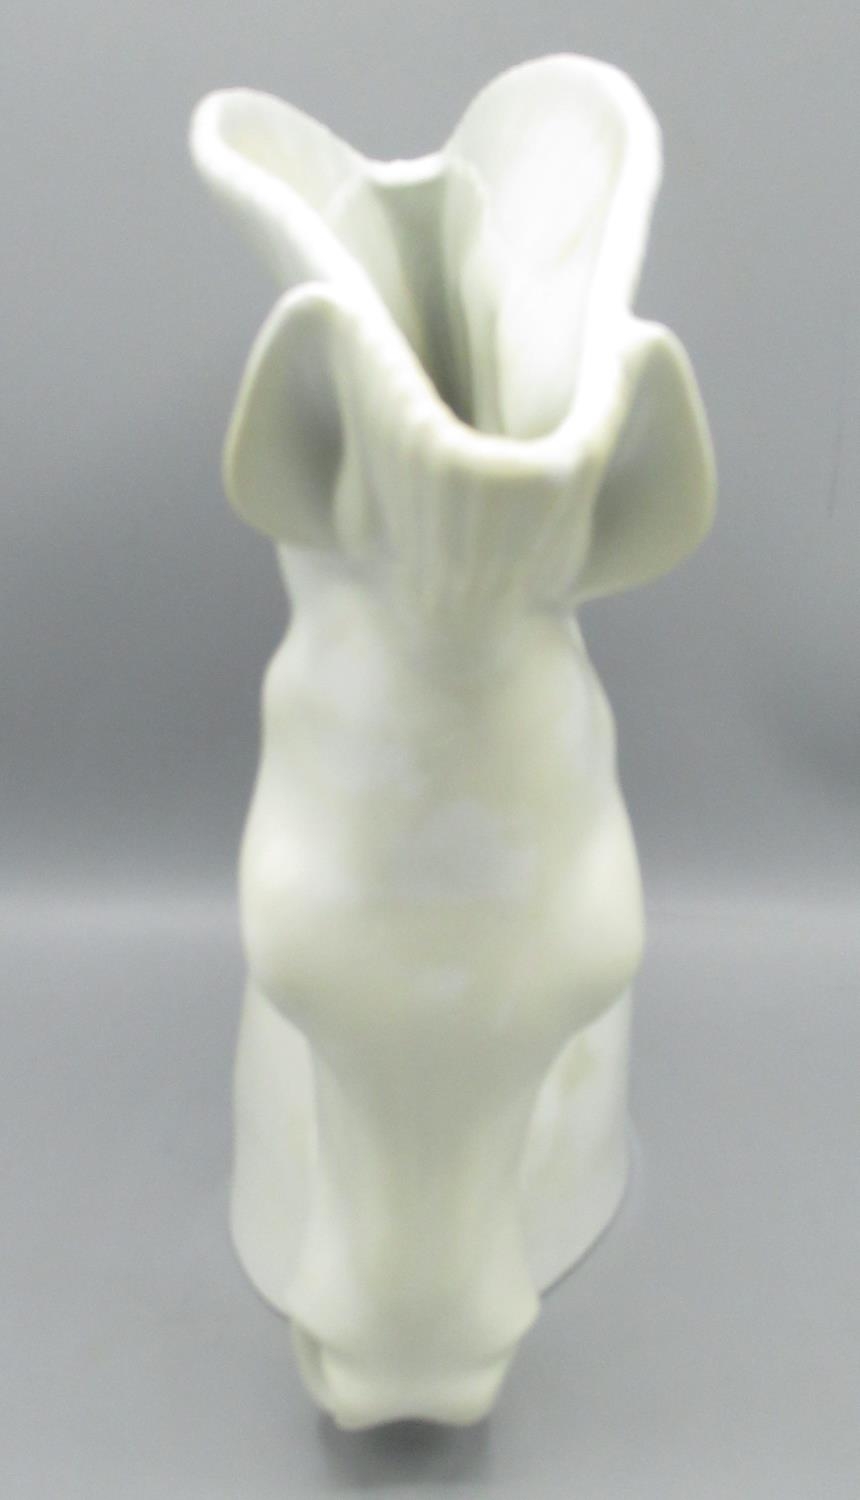 Royal Worcester Porcelain vase modelled as a horse head, H28cm - Image 2 of 4